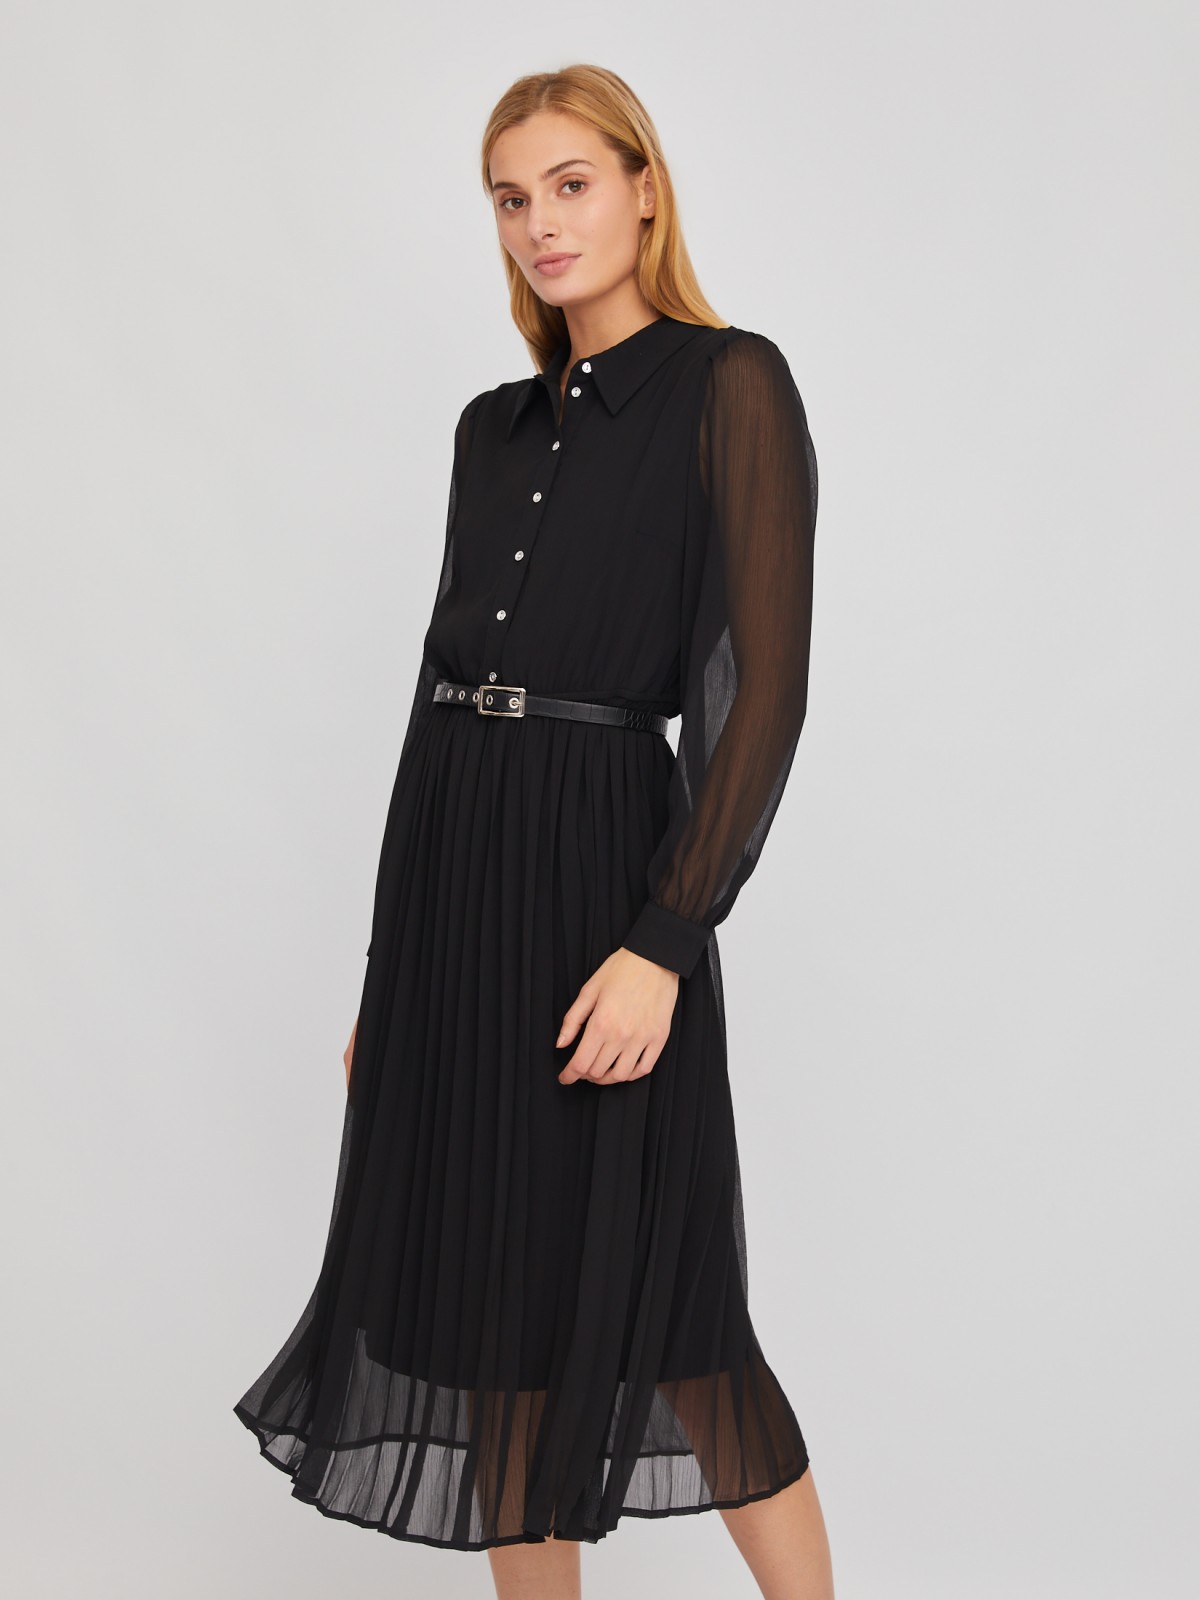 Шифоновое платье-рубашка длины миди с плиссировкой и акцентном на талии zolla 024118262033, цвет черный, размер S - фото 1